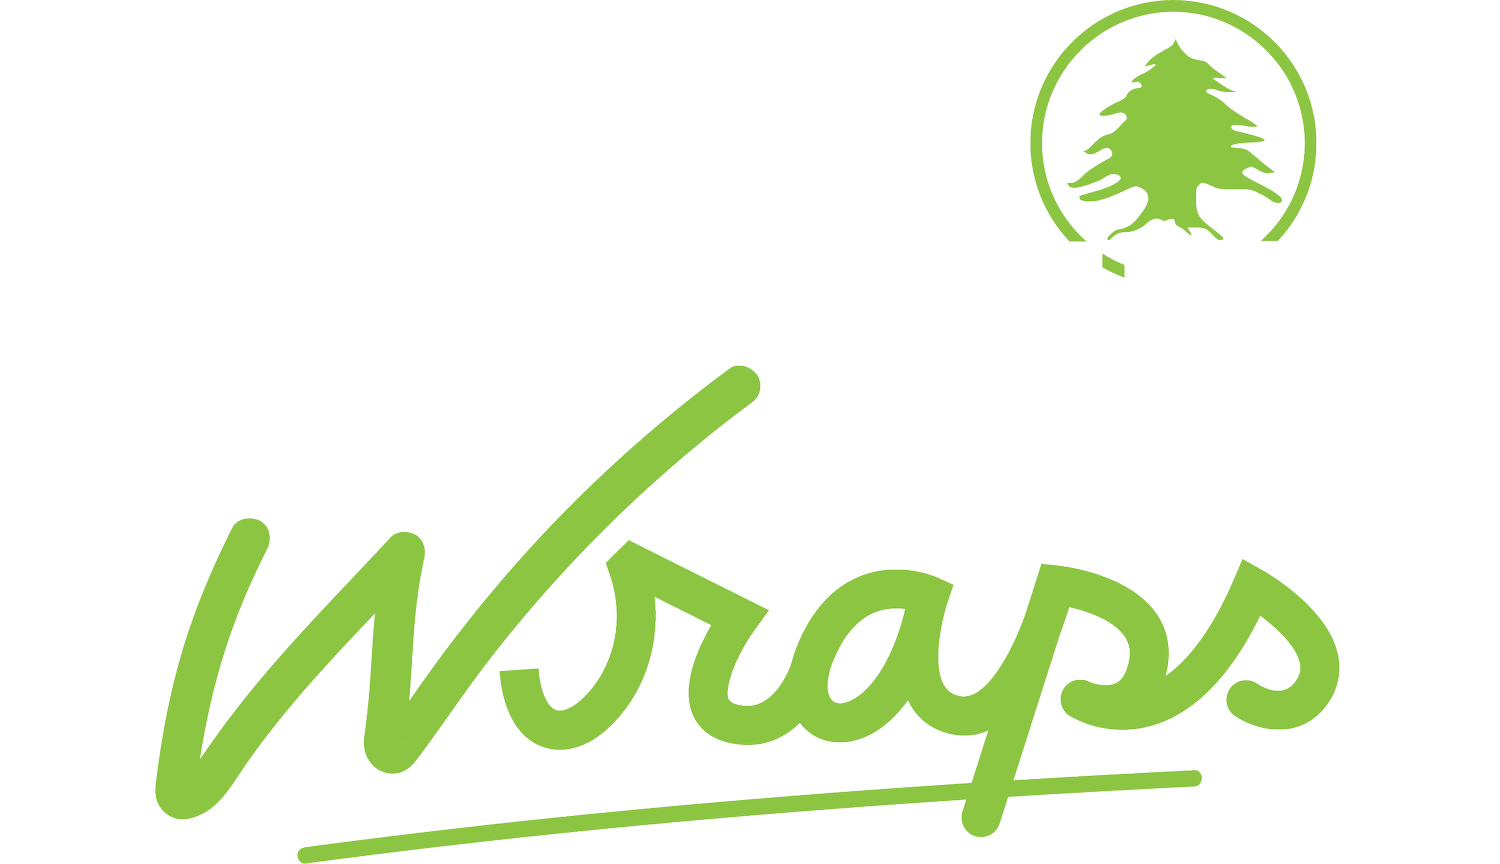 Gansett Wraps